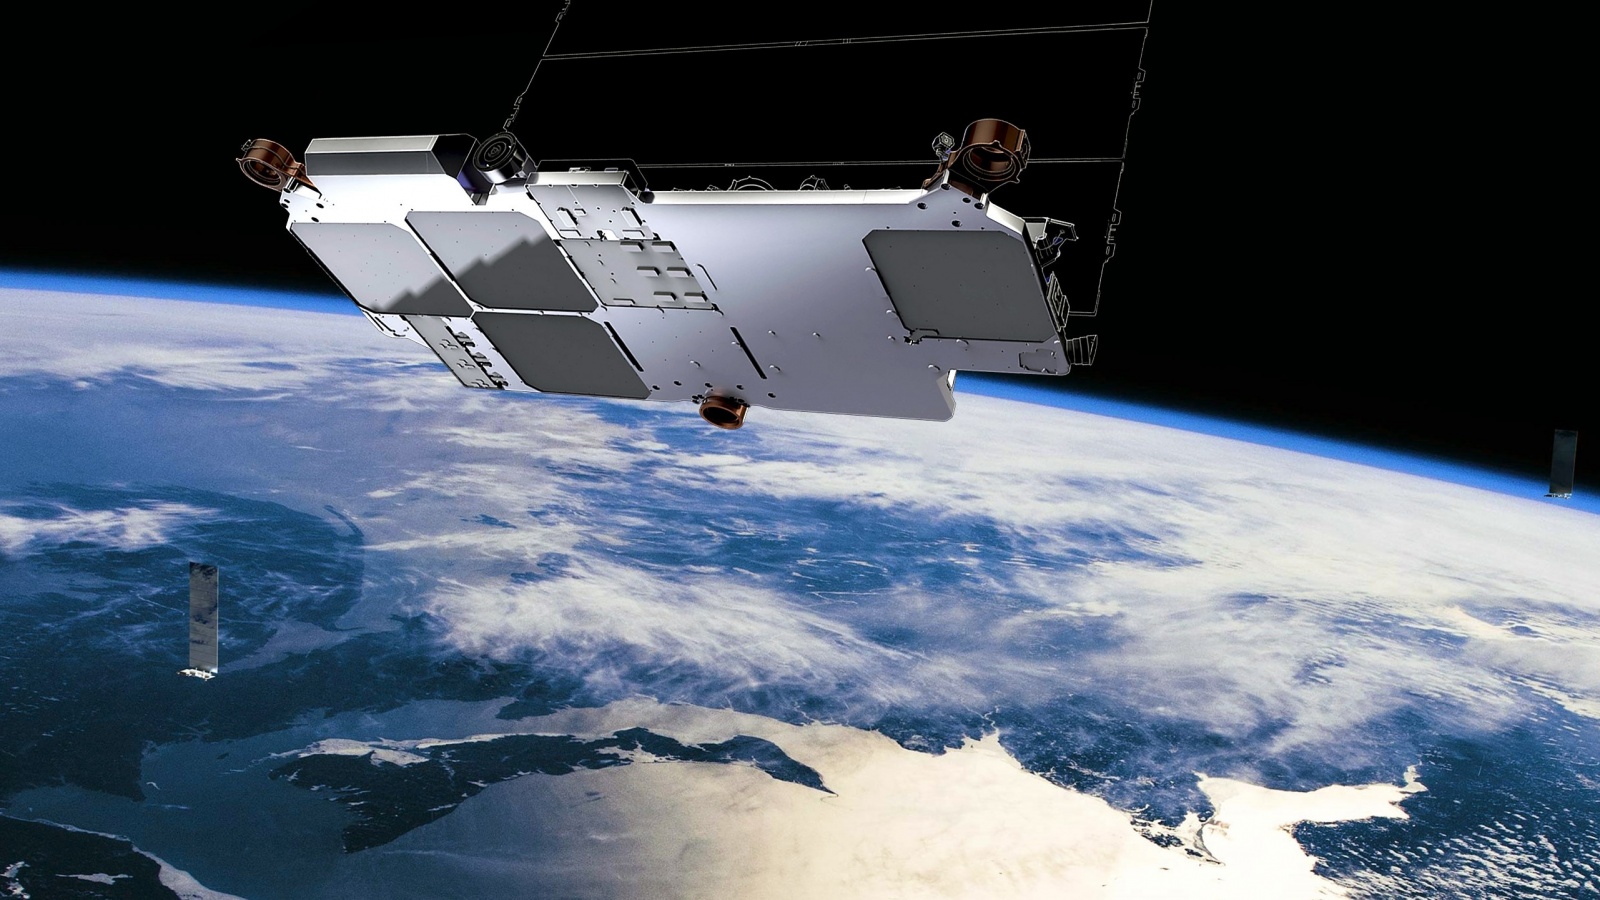 Starlink продолжает развиваться: запуск новых спутников, покупка стартапа и увеличение пропускной способности сети - 3